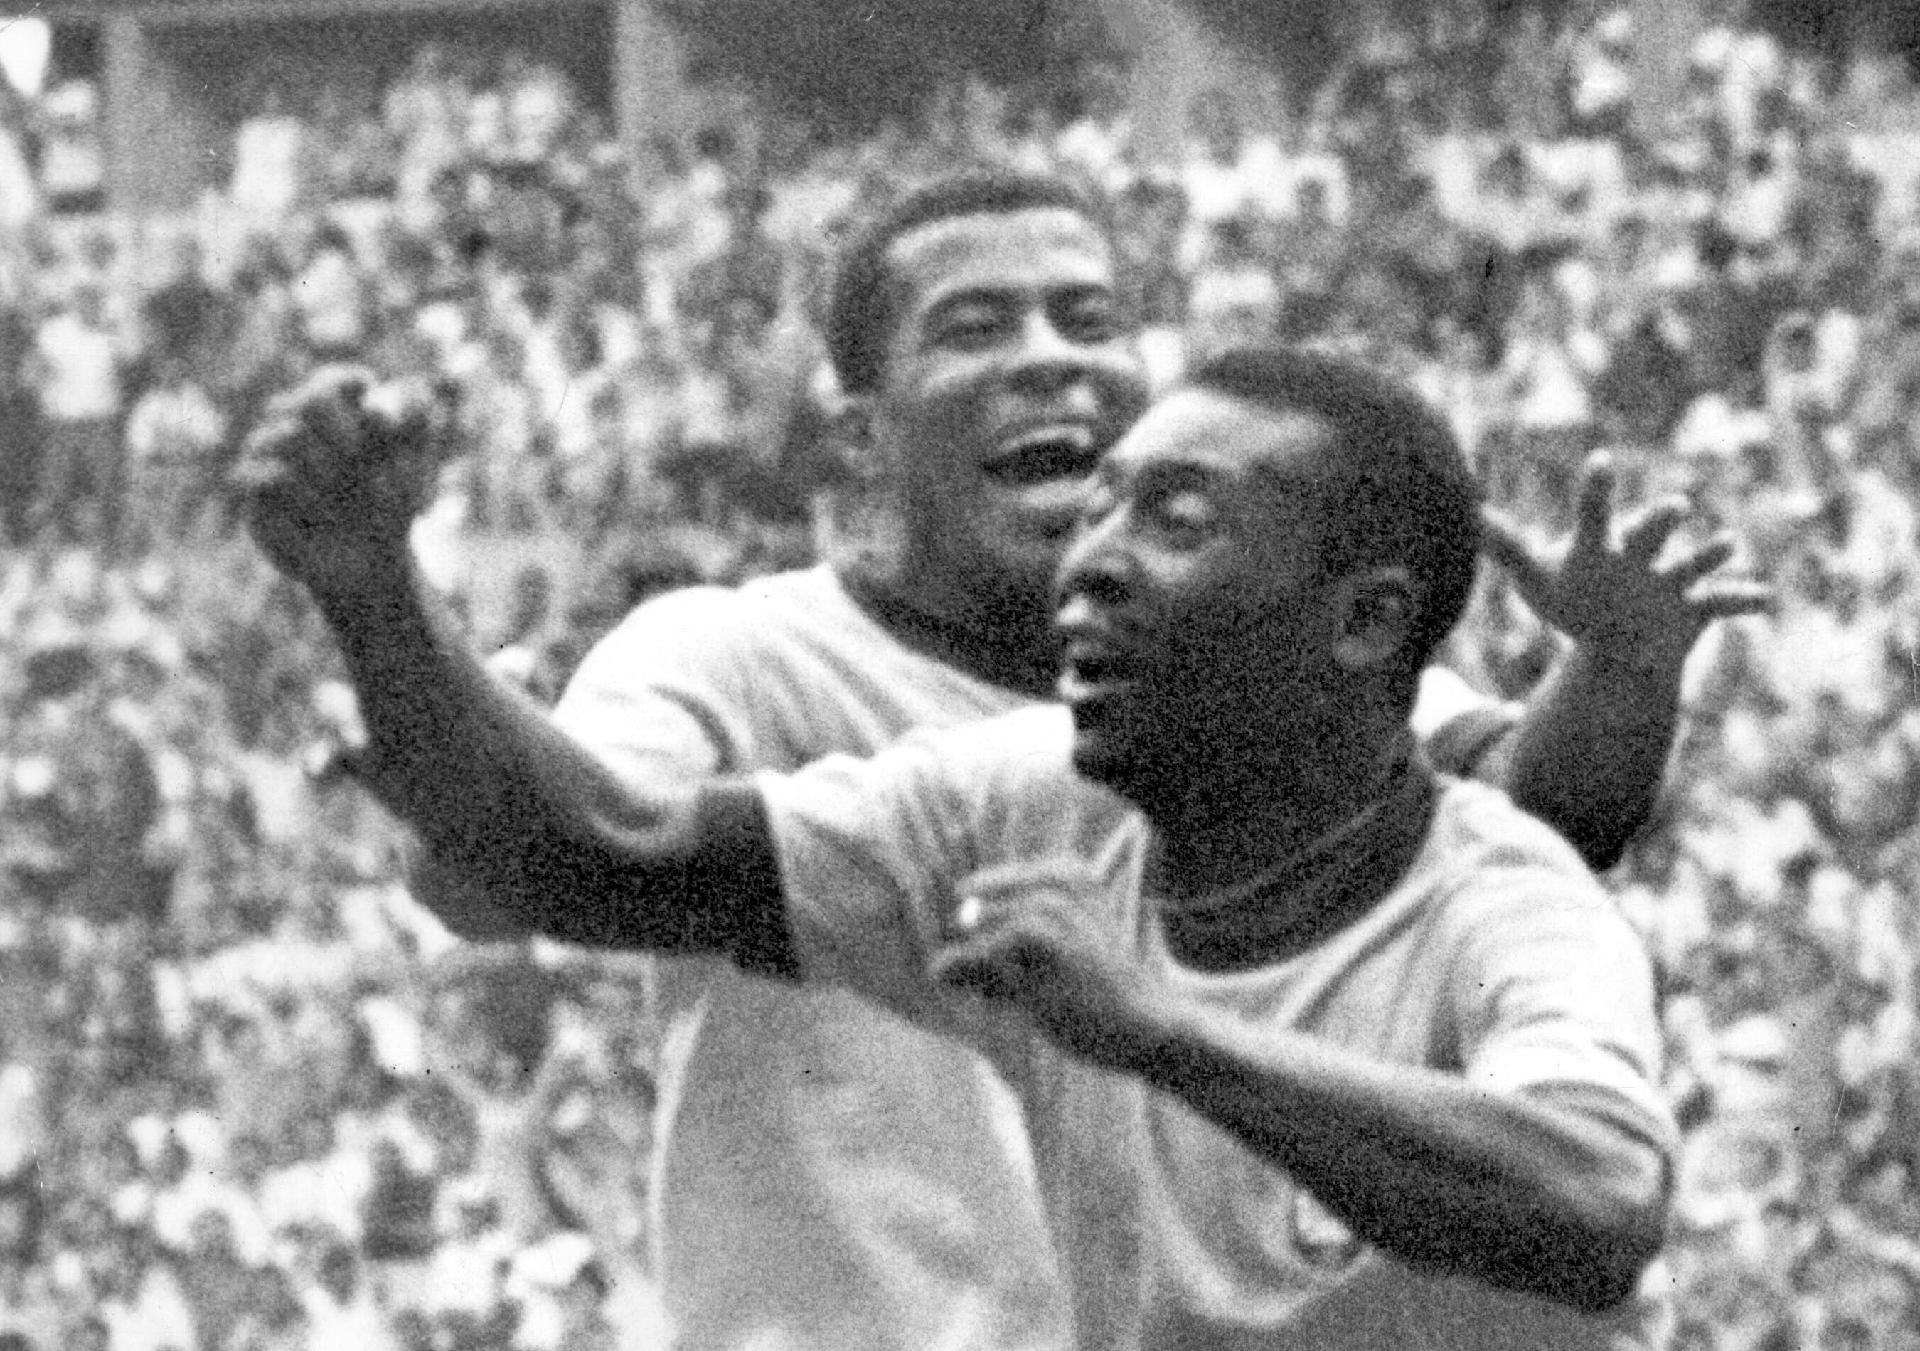 Copa de 1970 no México: Jairzinho corre para abraçar Pelé, que comemora o primeiro gol do Brasil contra a Itália, no dia 21 de junho de 1970, no Estádio Azteca (Cidade do México). - Estadão Conteúdo